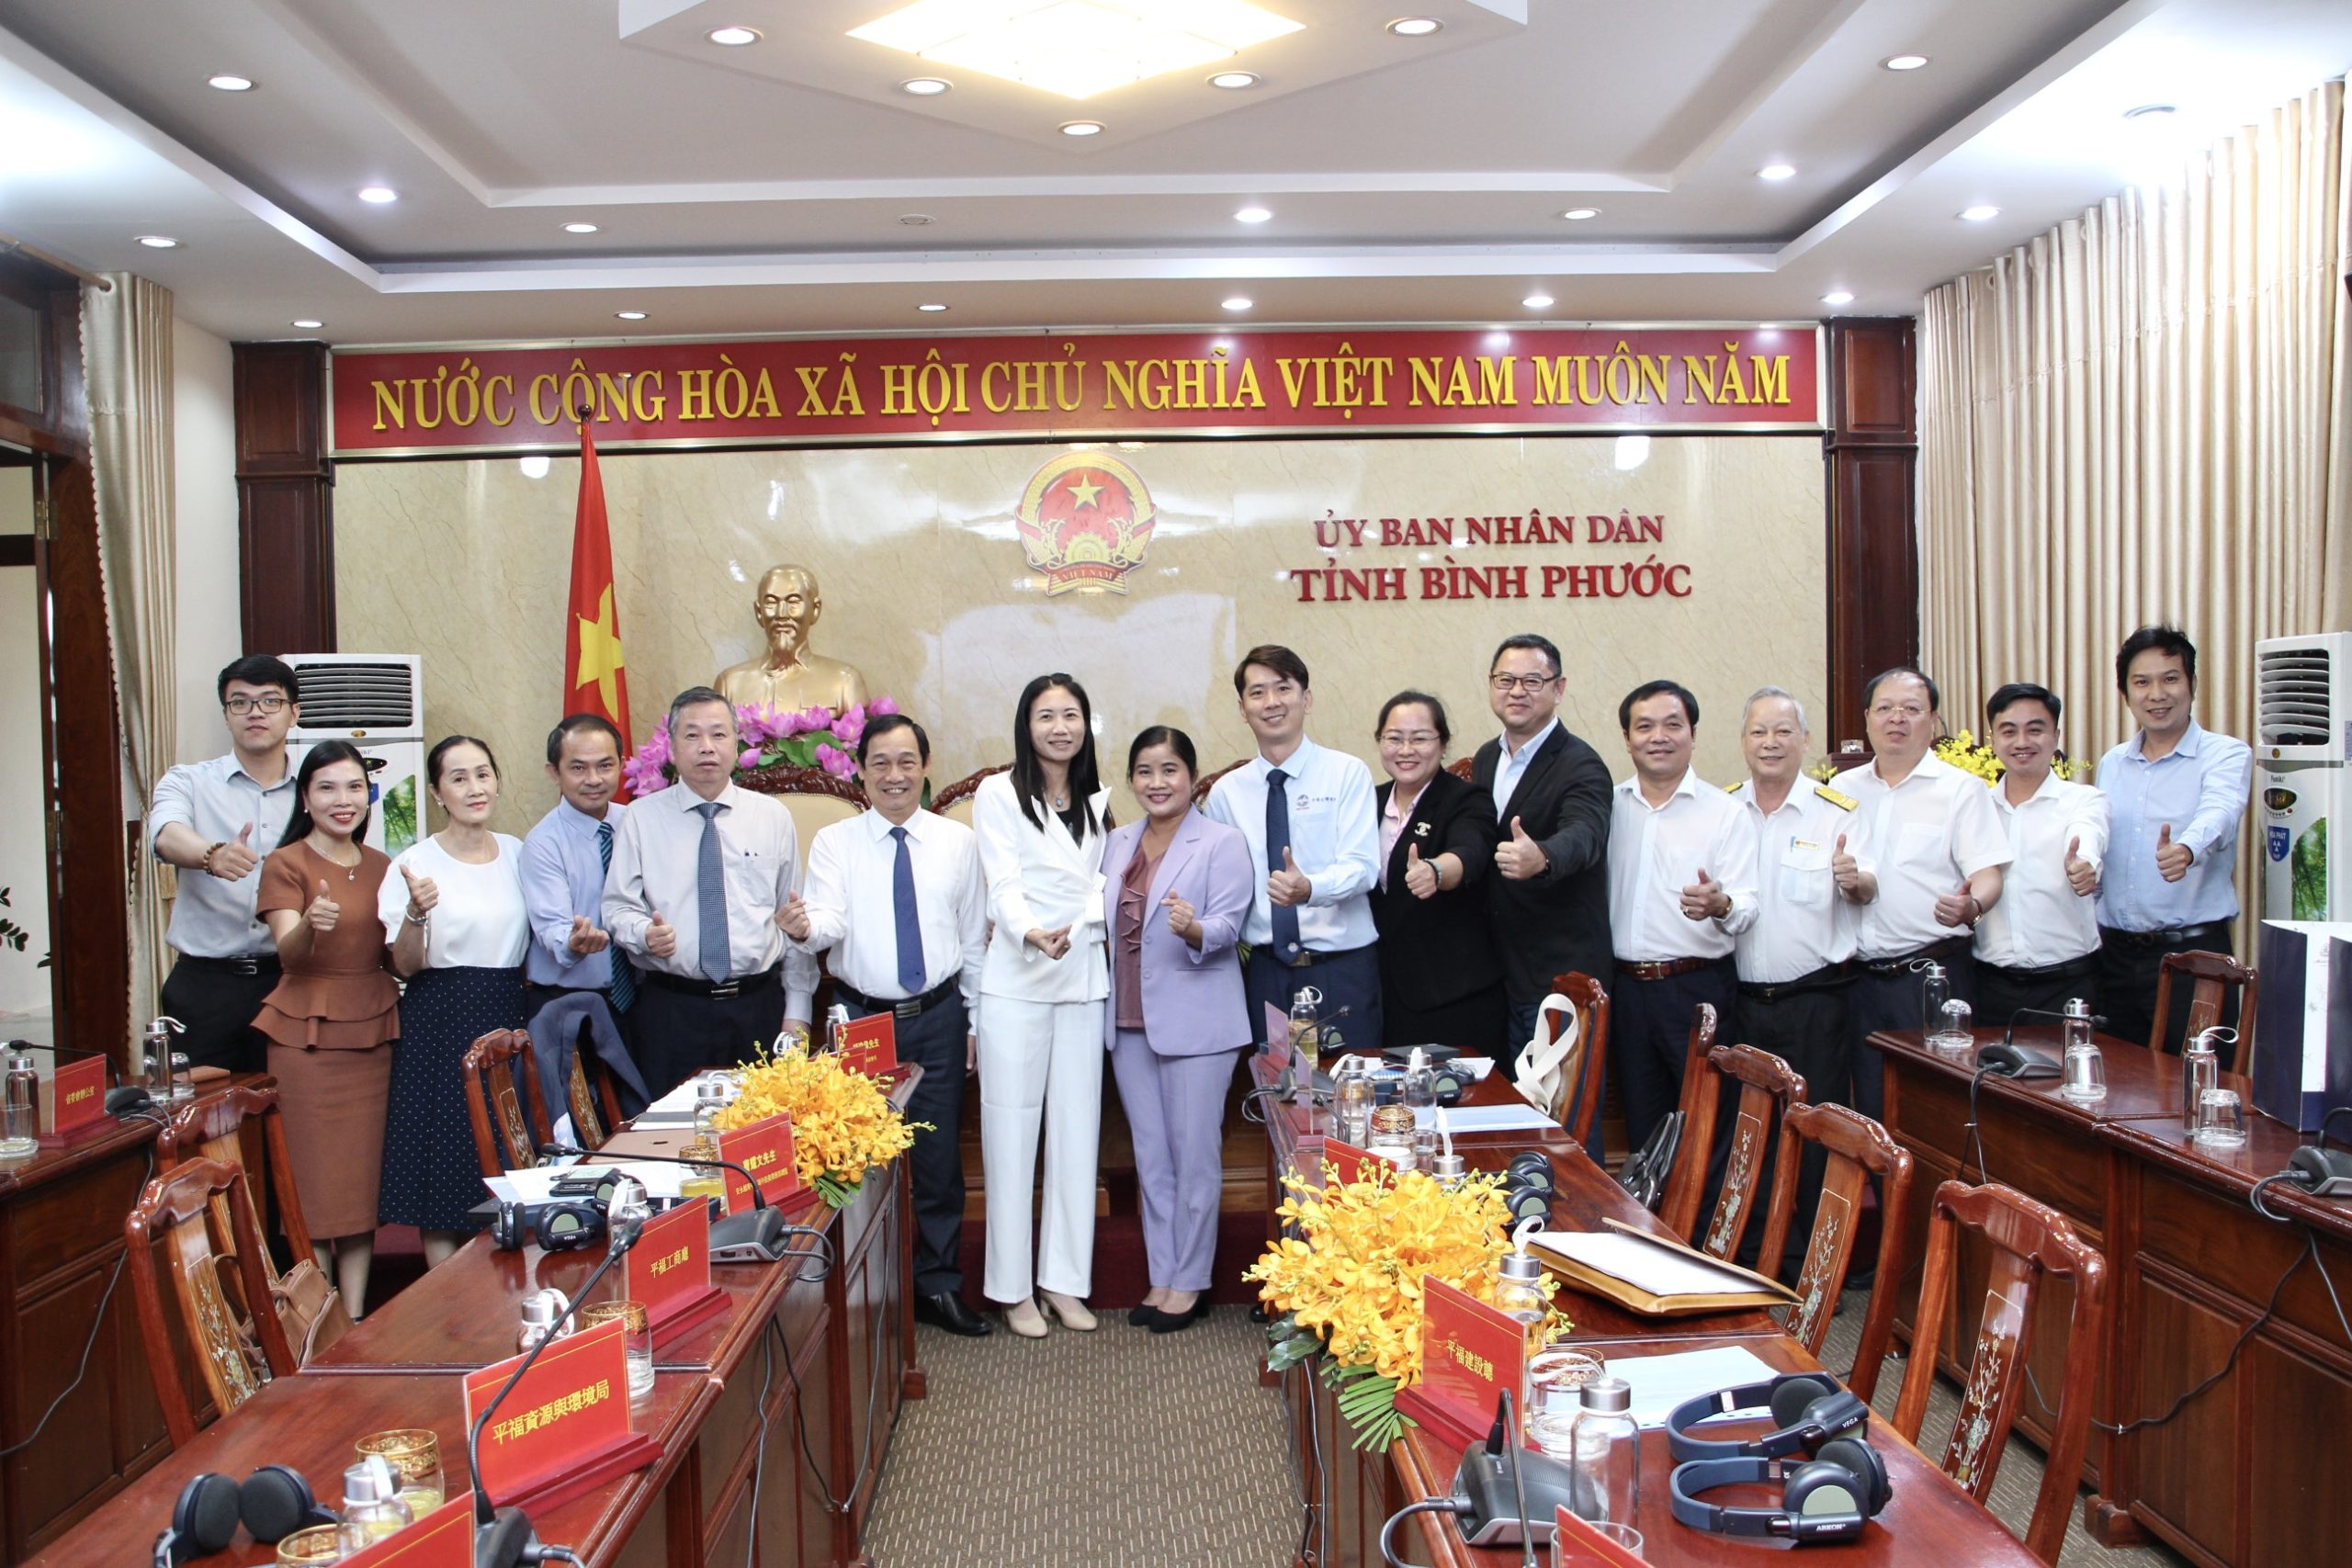 Lãnh đạo tỉnh Bình Phước chụp hình lưu niệm cùng các đại biểu tham dự Hội thảo